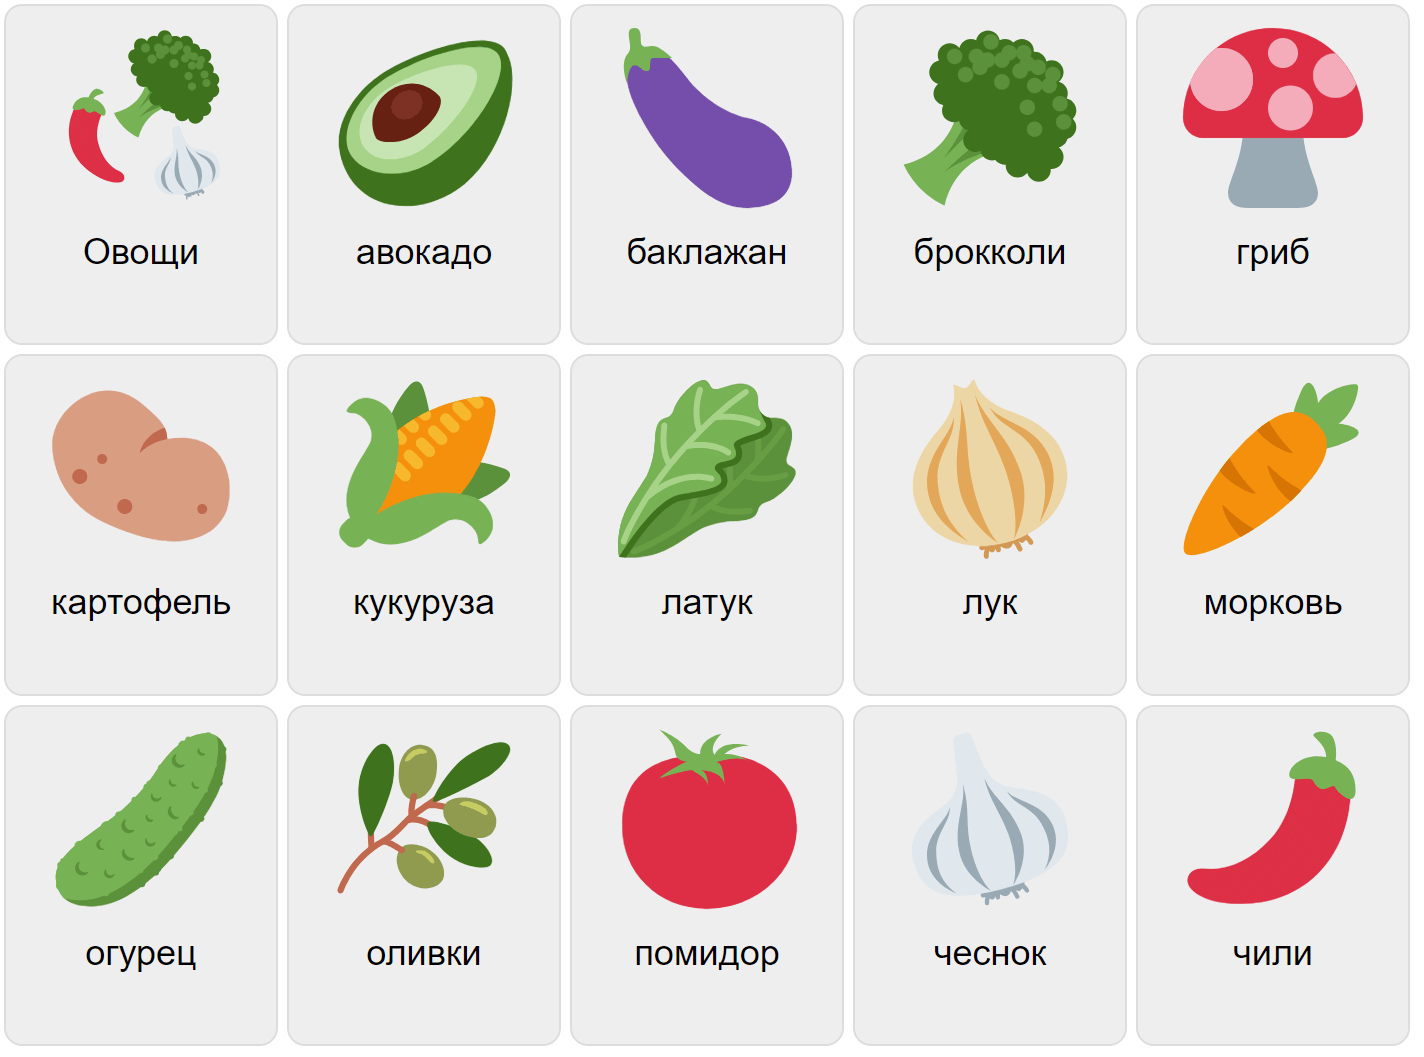 Gemüse auf Russisch